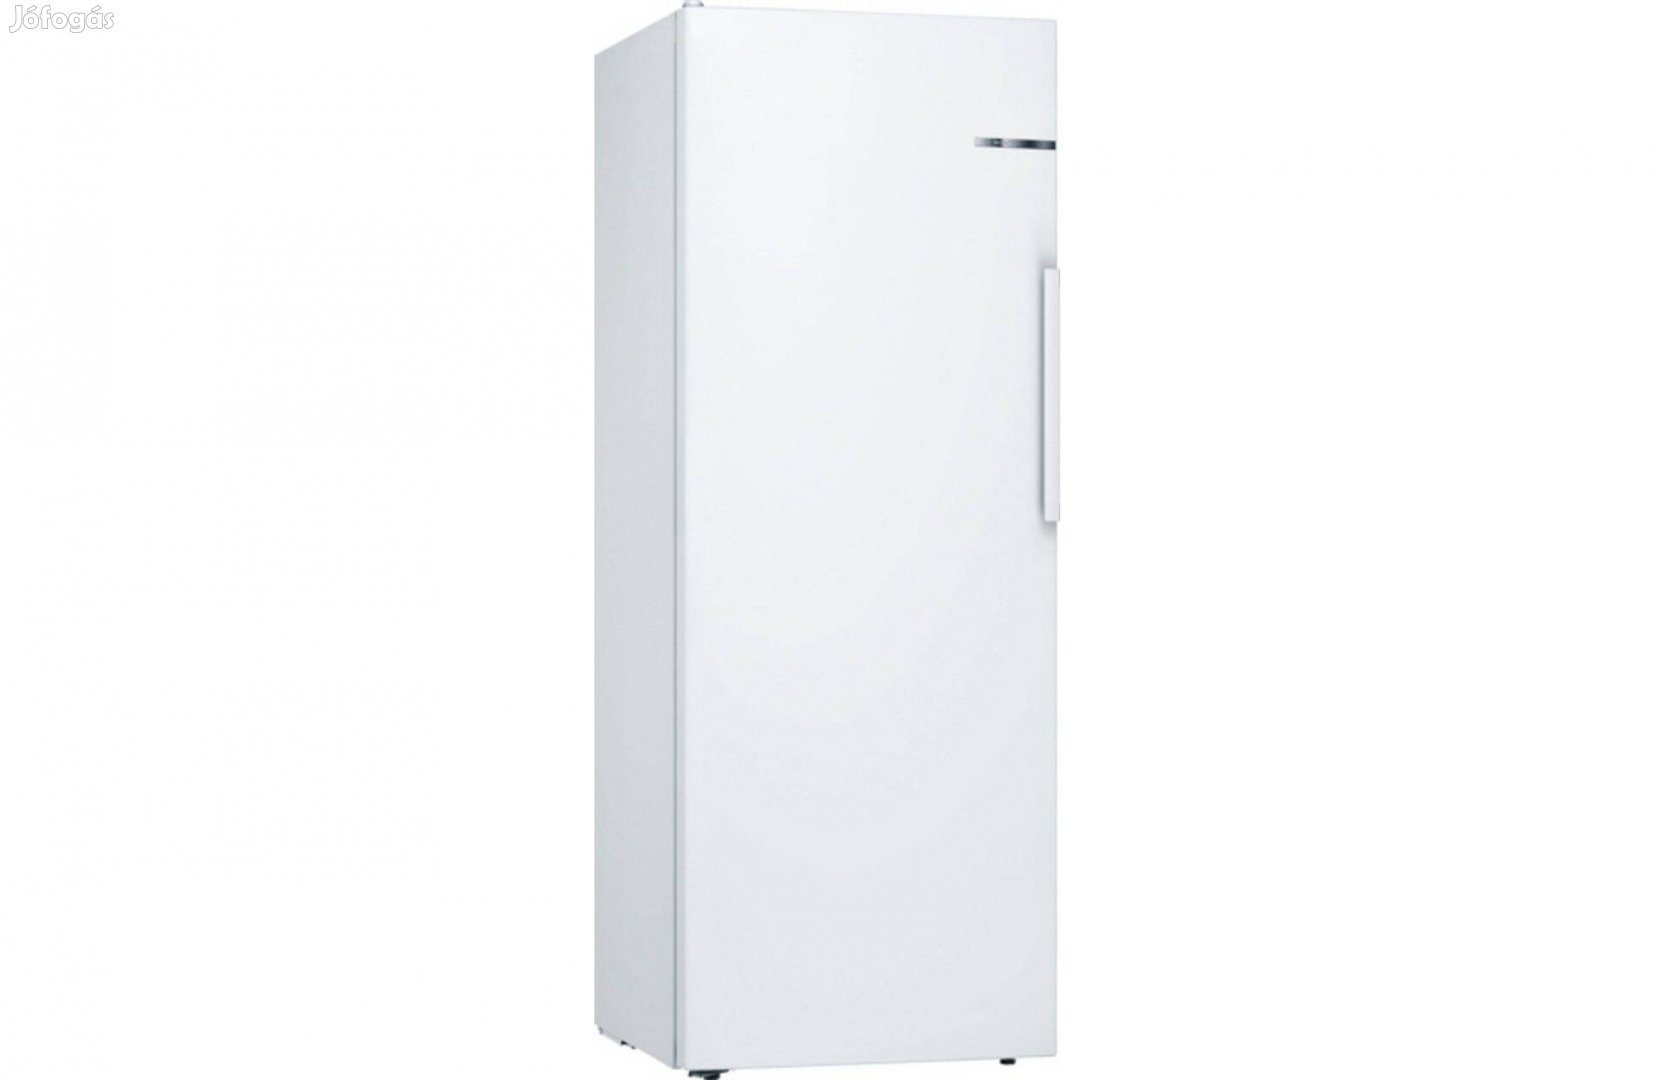 Új Bosch hűtő, hűtőszekrény KSV29Vwep, 161 cm magas, 60 cm 290 liter